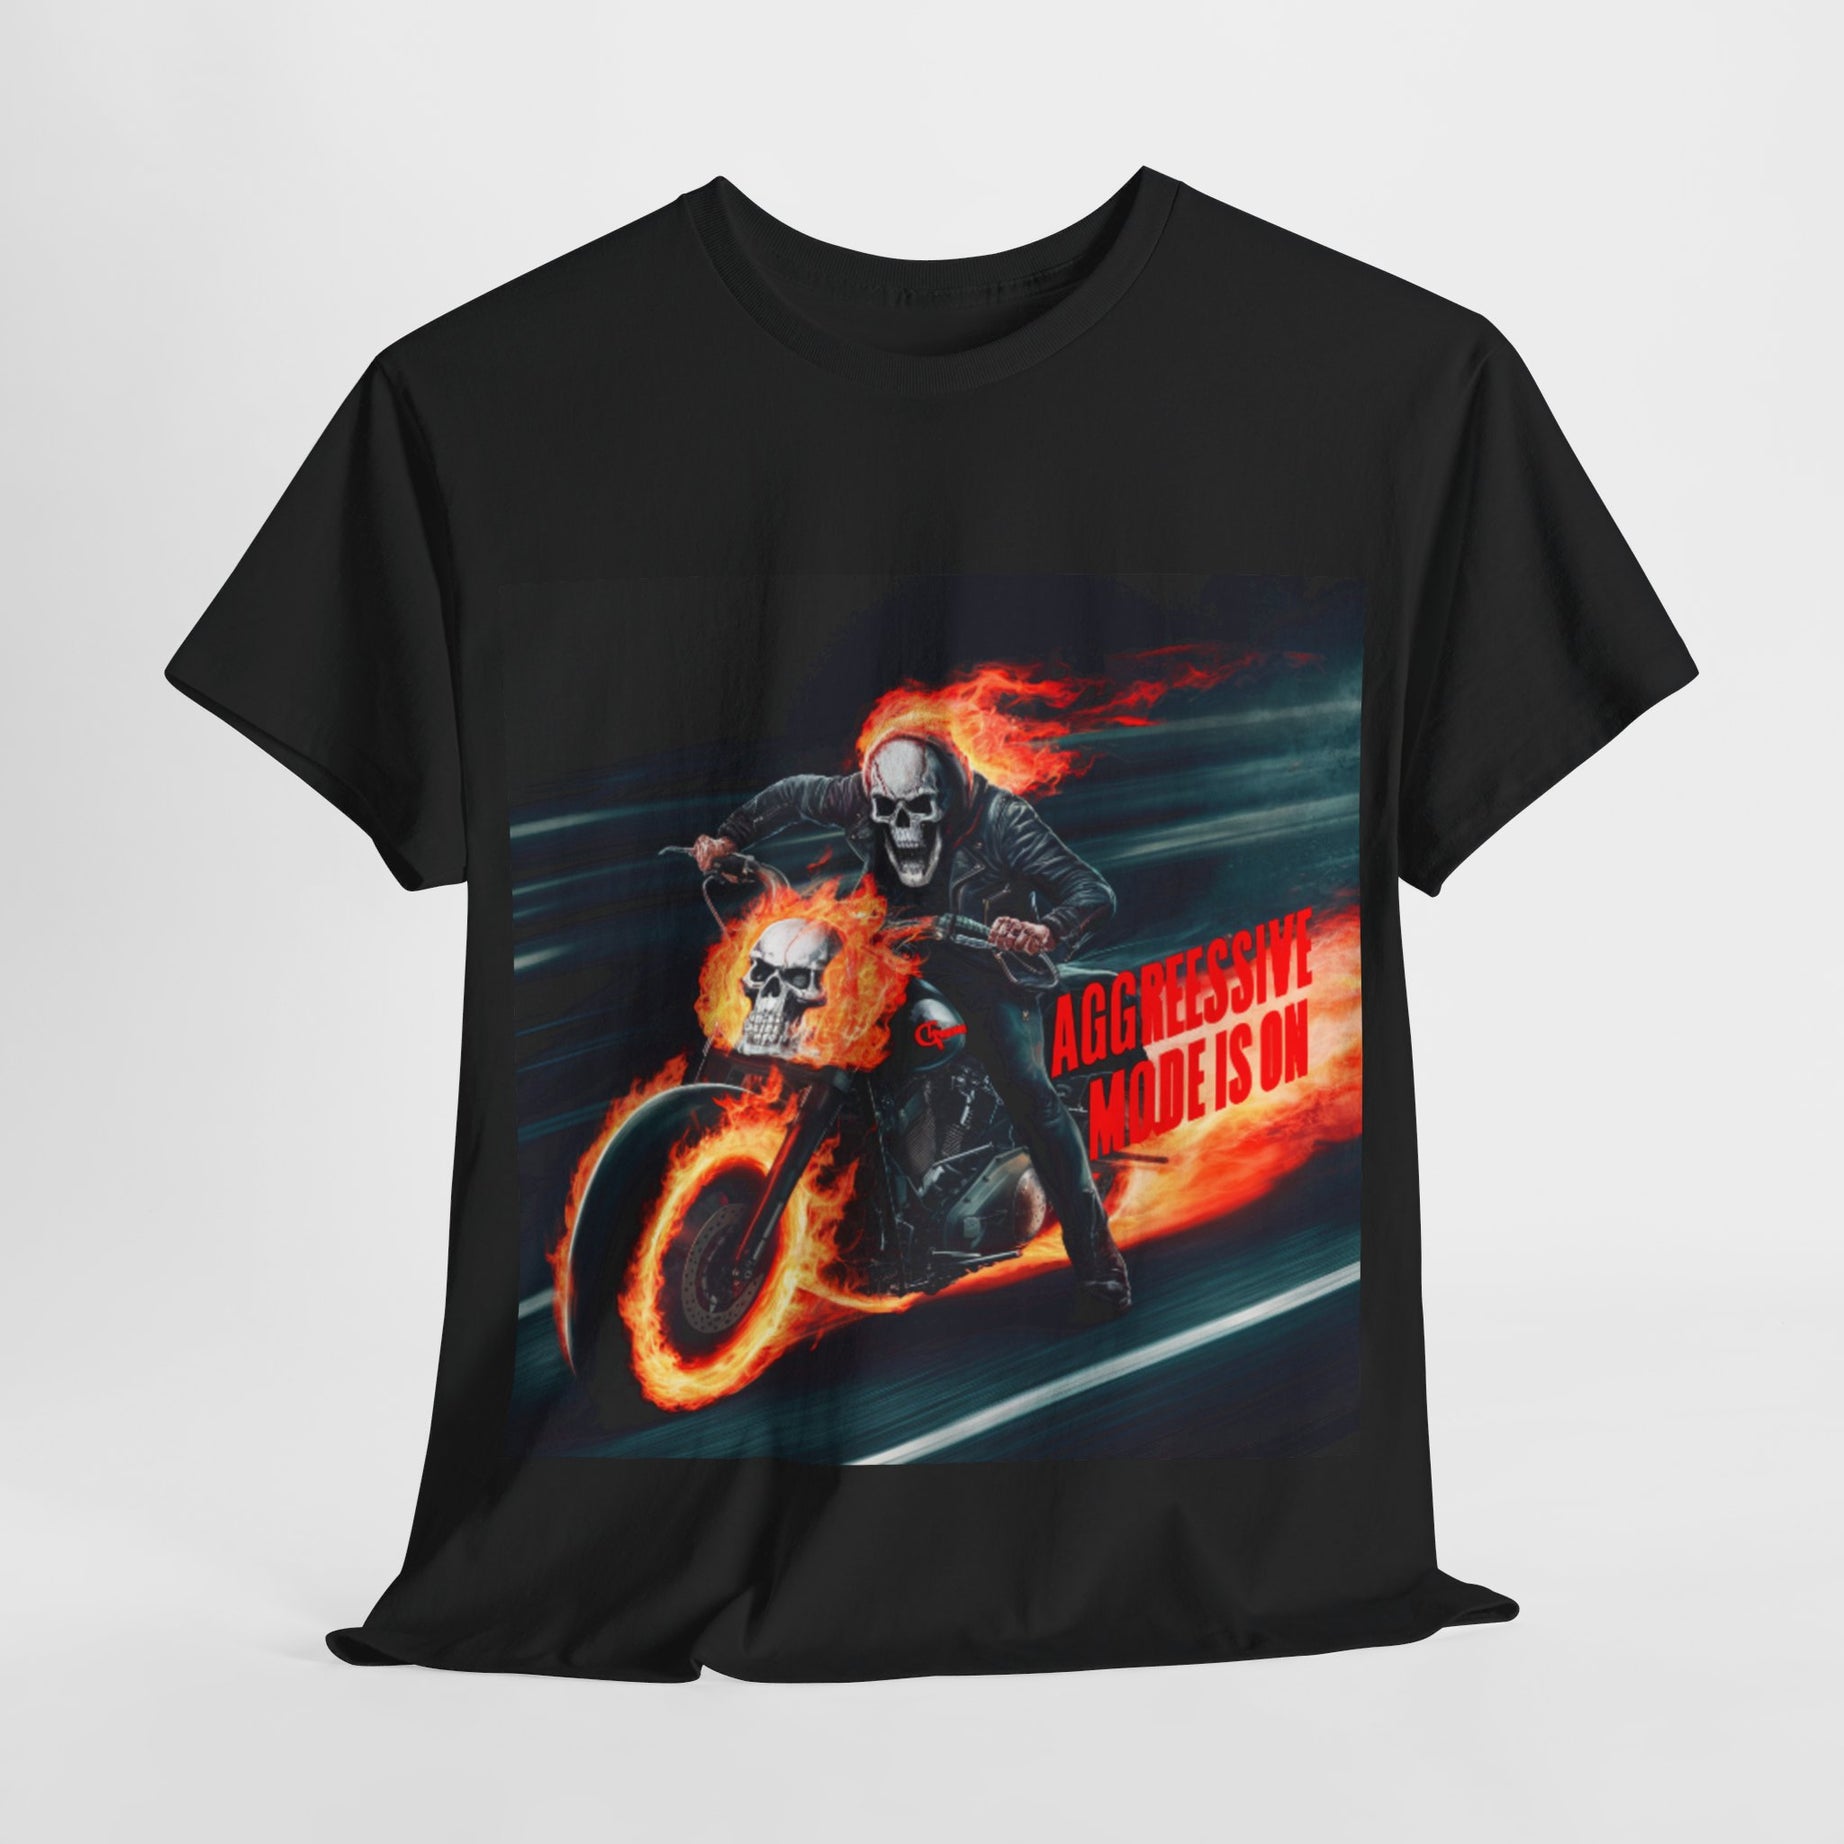 Darkghost Rider” Flame Wheel Shirt